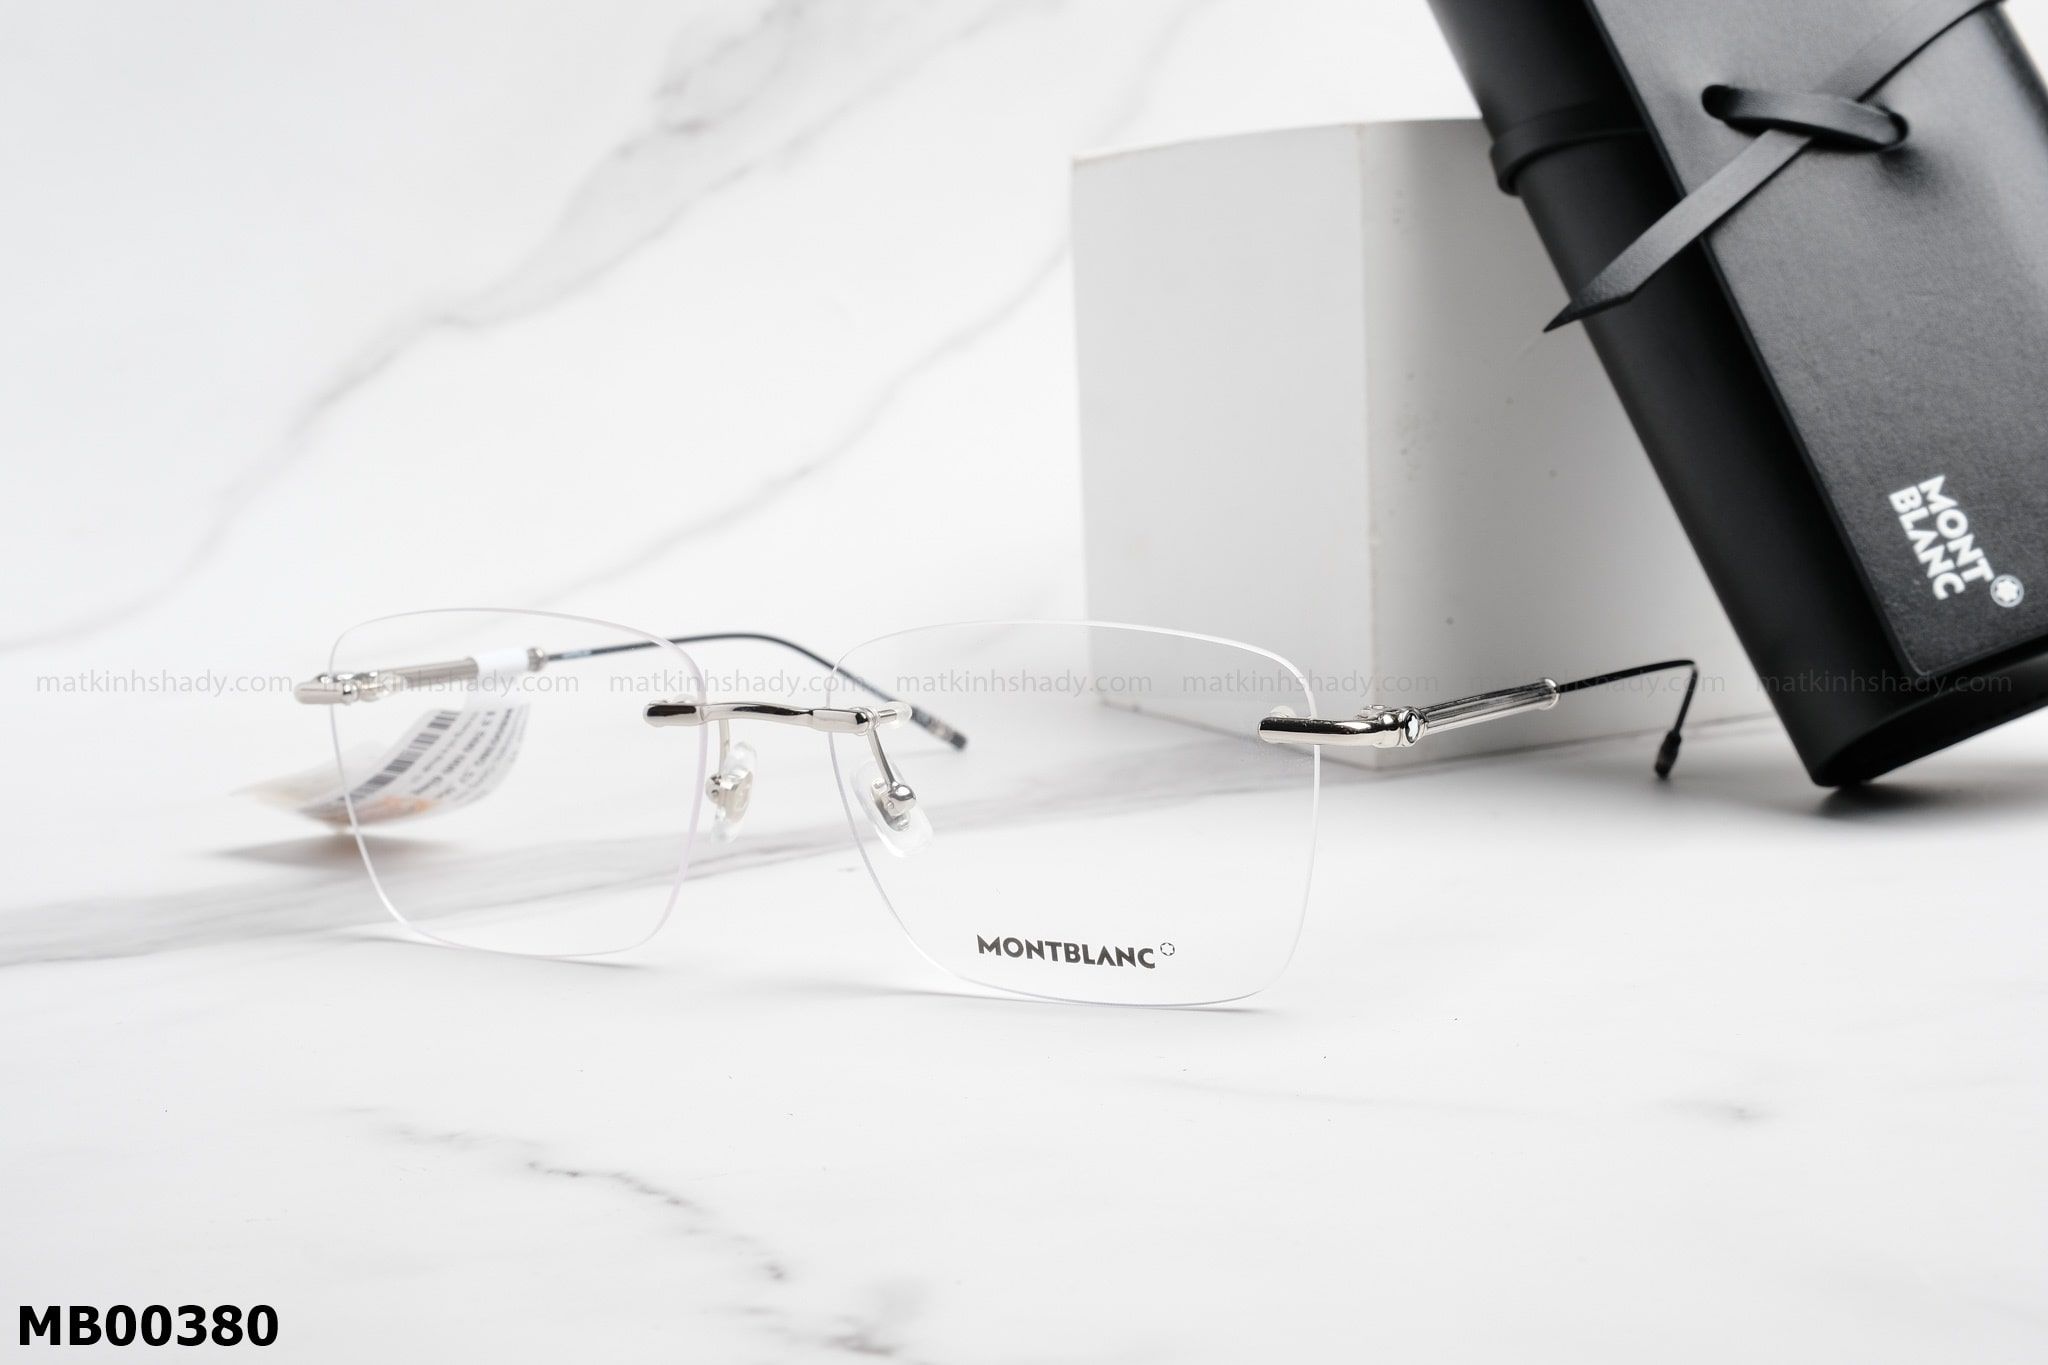  Montblanc Eyewear - Glasses - MB00380 